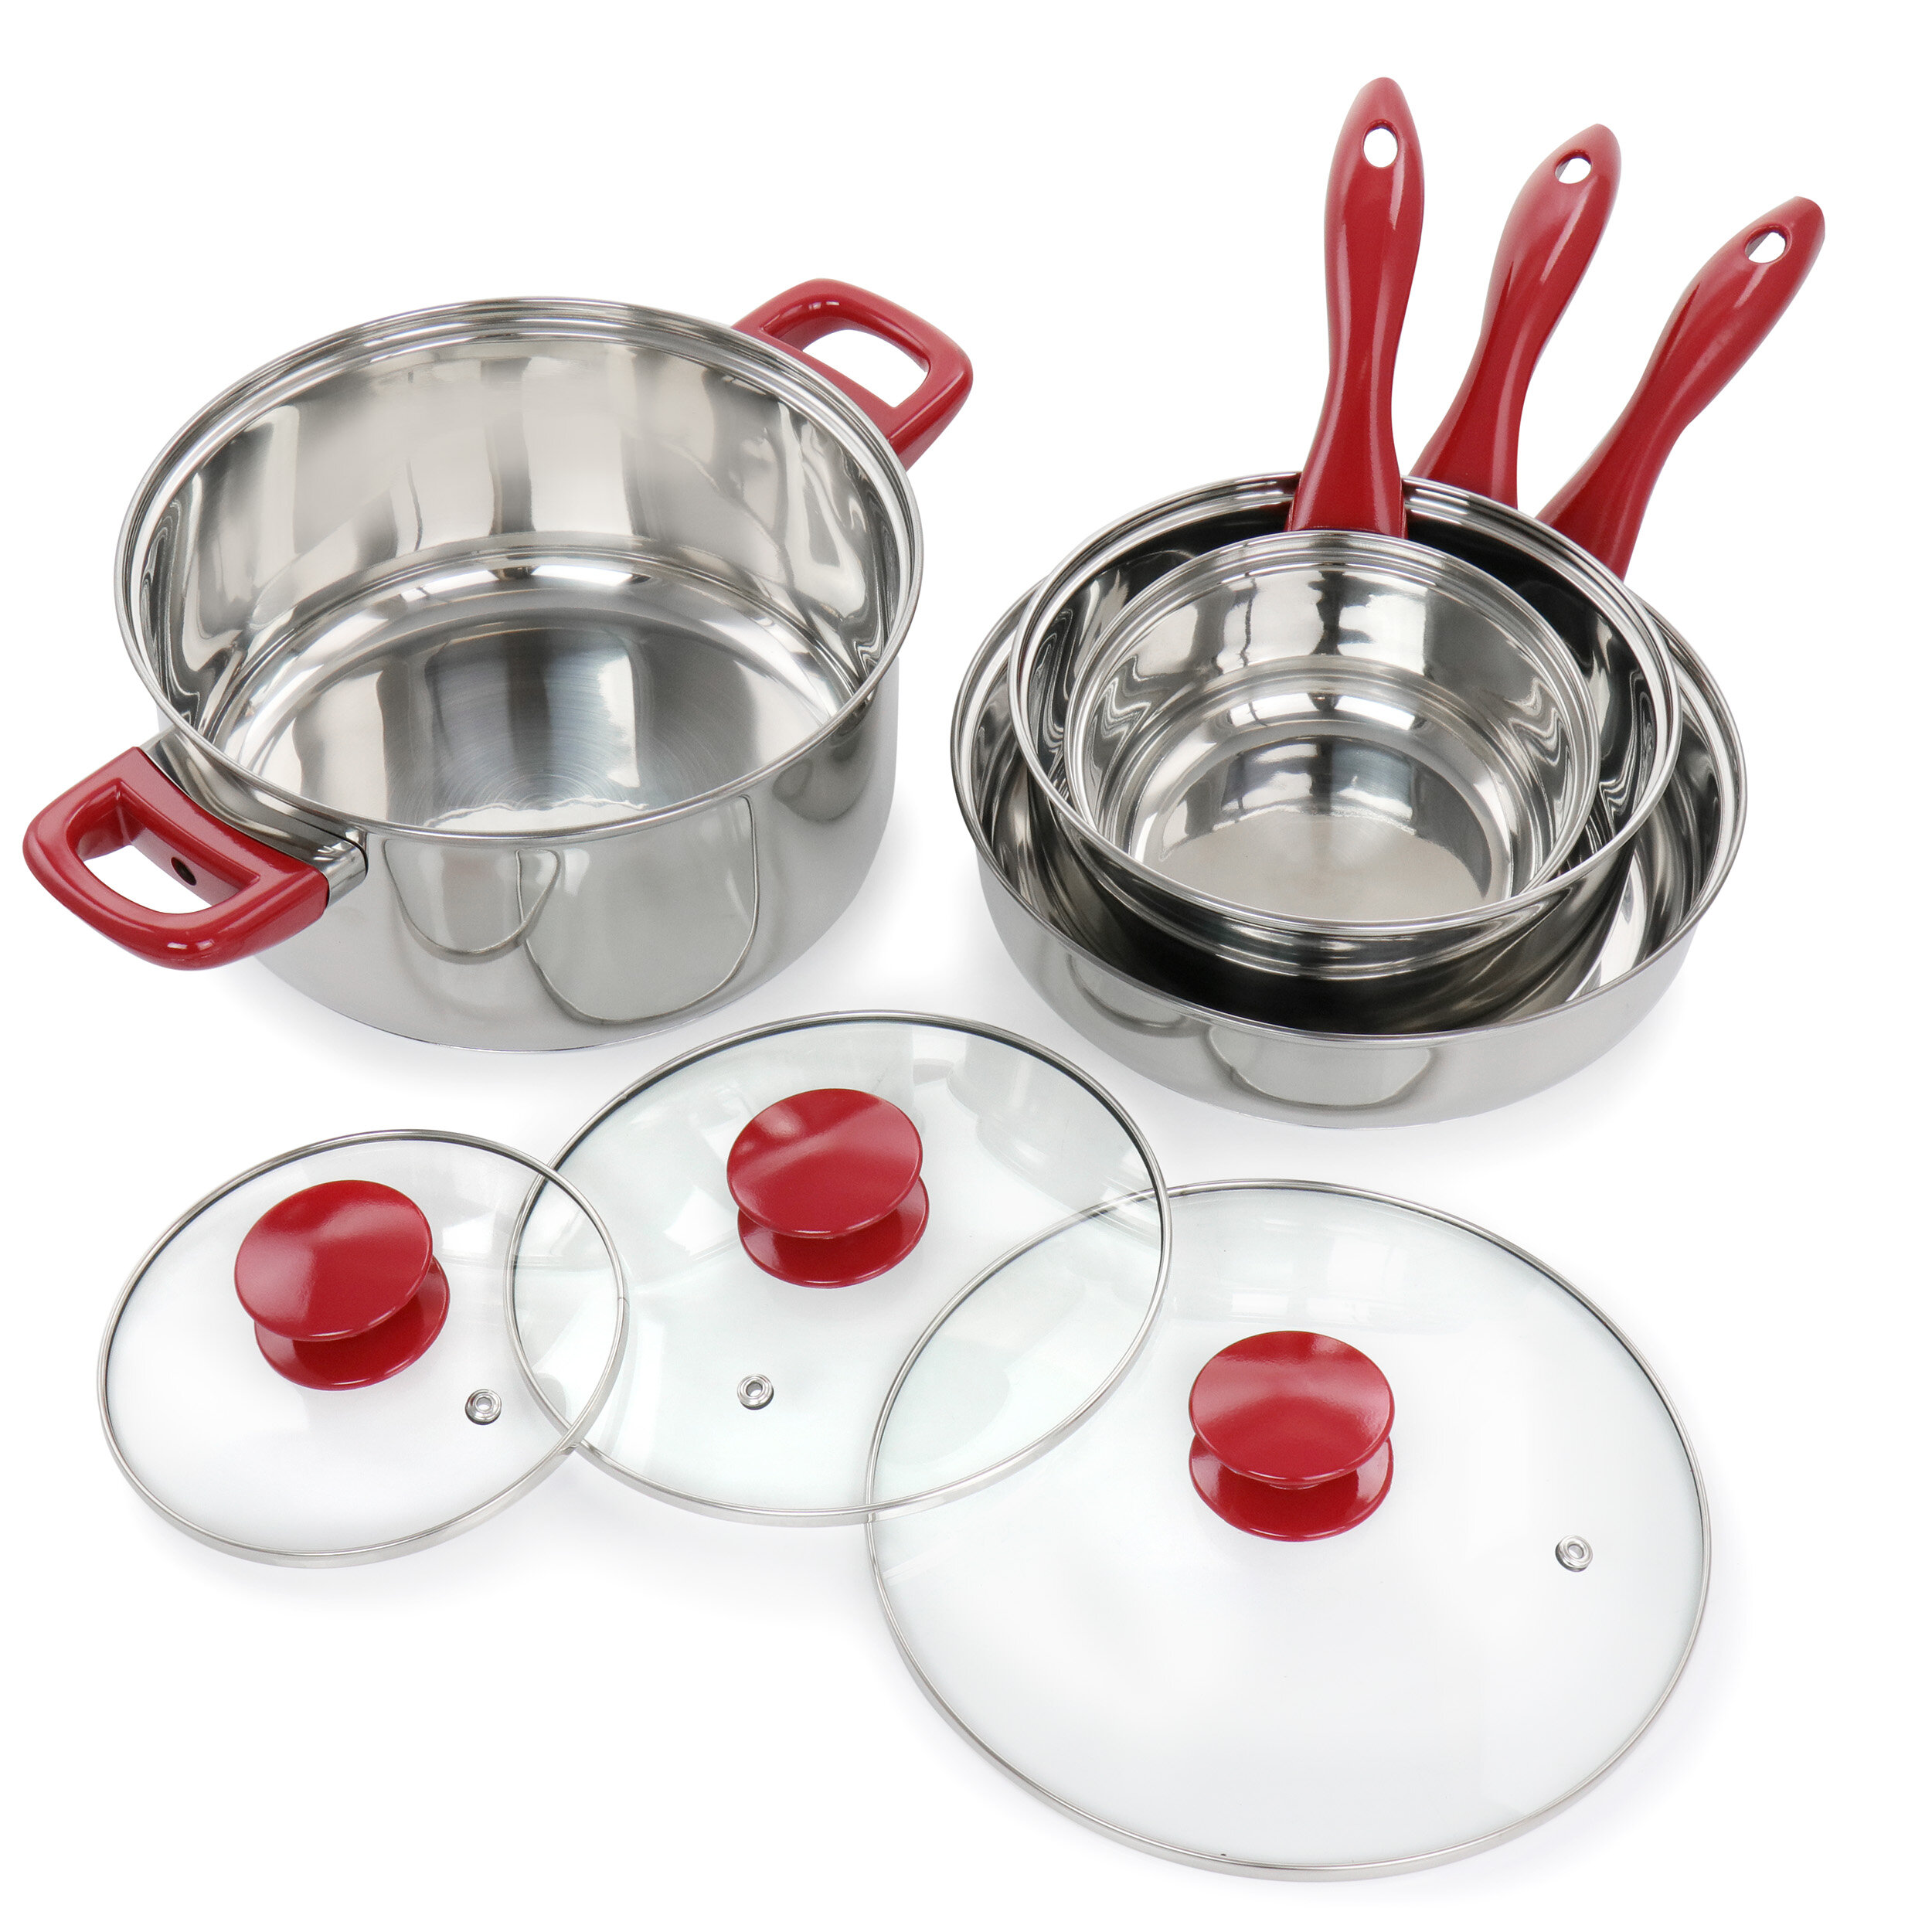 https://assets.wfcdn.com/im/01544907/compr-r85/1286/128623940/7-piece-stainless-steel-cookware-set.jpg